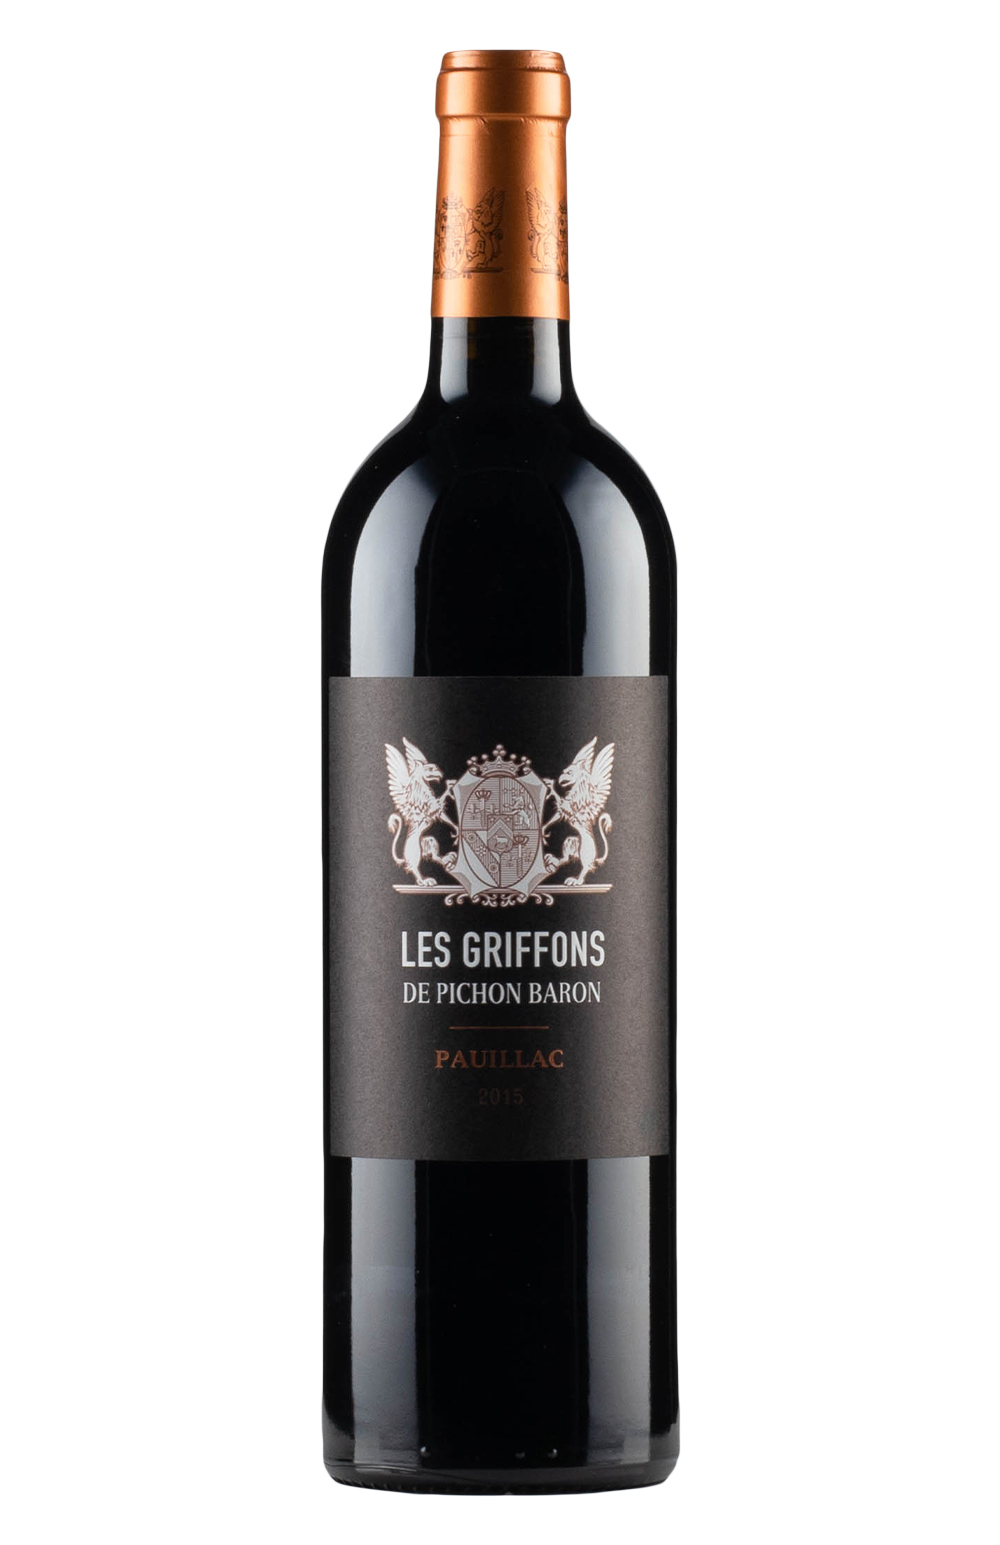 Les Griffons de Pichon Baron 2015 | Hedonism Wines